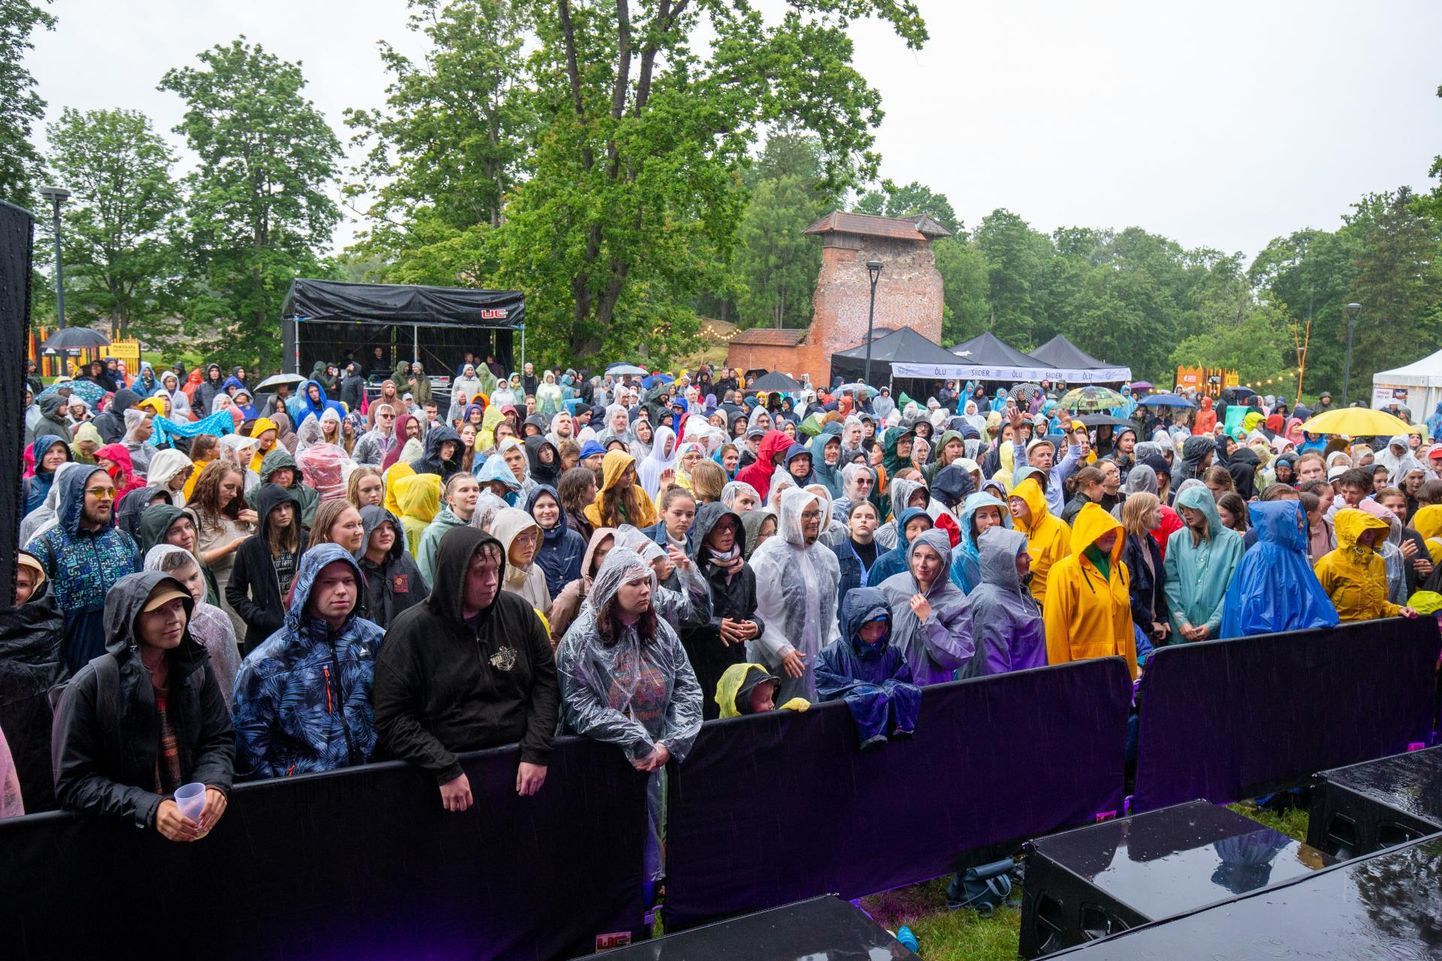 Viimati kogunes Viljandisse palju rahvast kontsertide "Pärimusa 2.0" ajal. Koroonaviiruse hirmus praegu kontserte Viljandis tühistatud ei ole.